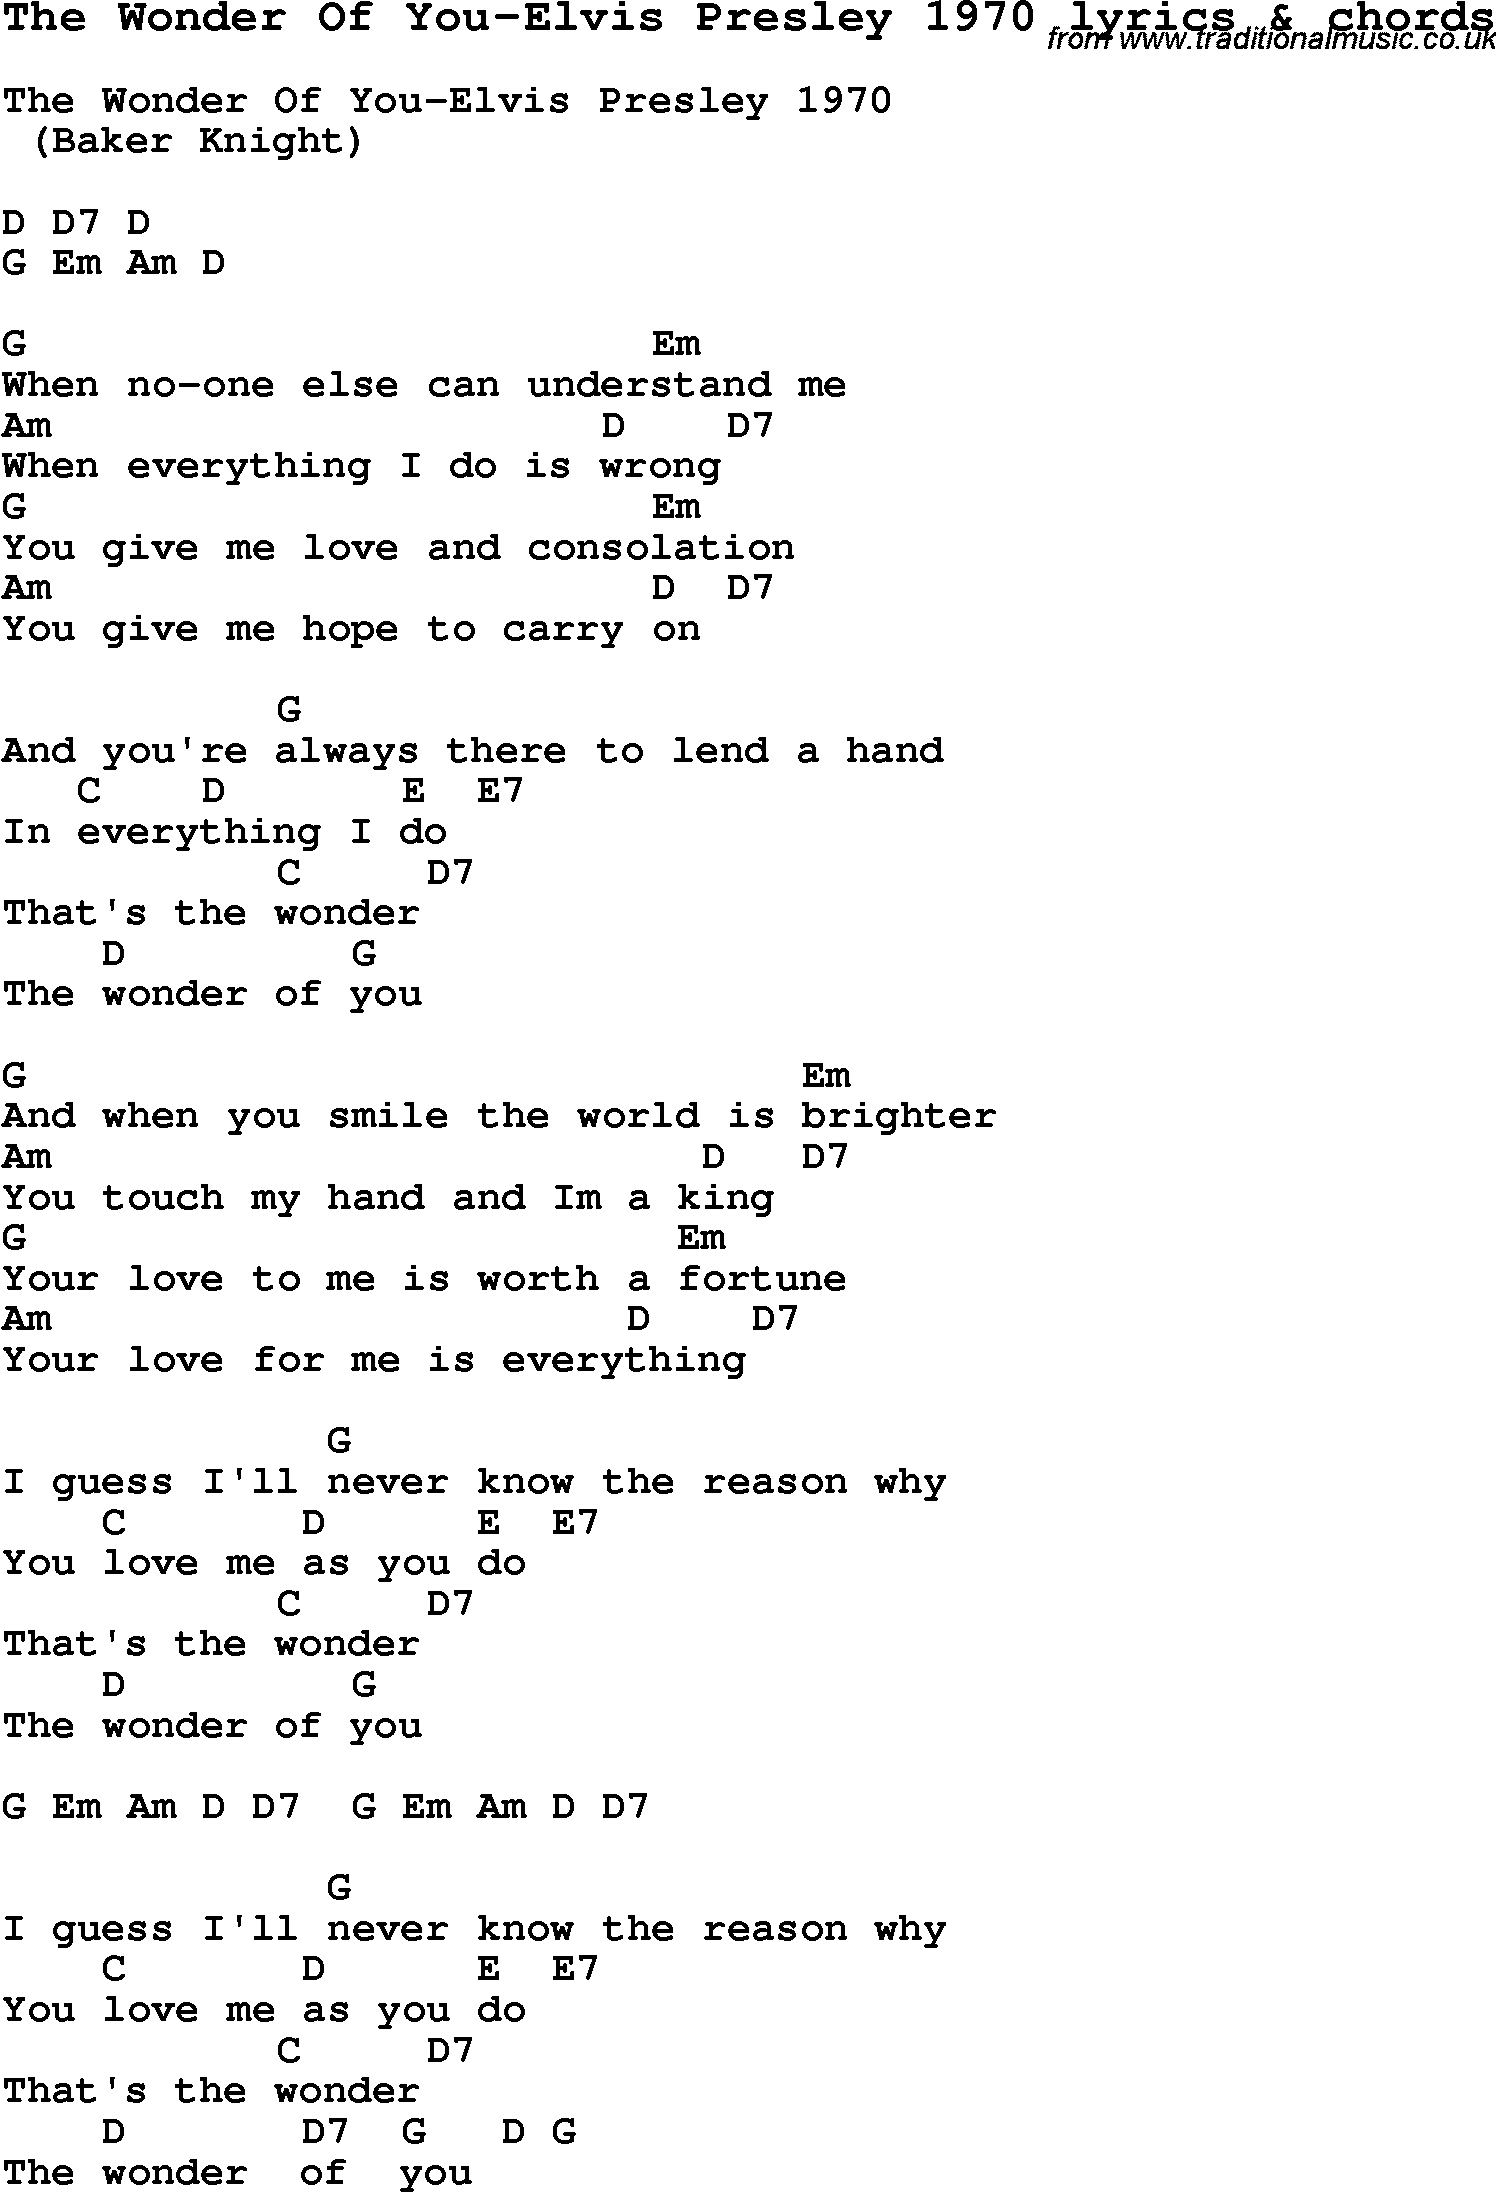 Love Song Lyrics for: The Wonder Of You-Elvis Presley 1970 with chords for Ukulele, Guitar Banjo etc.